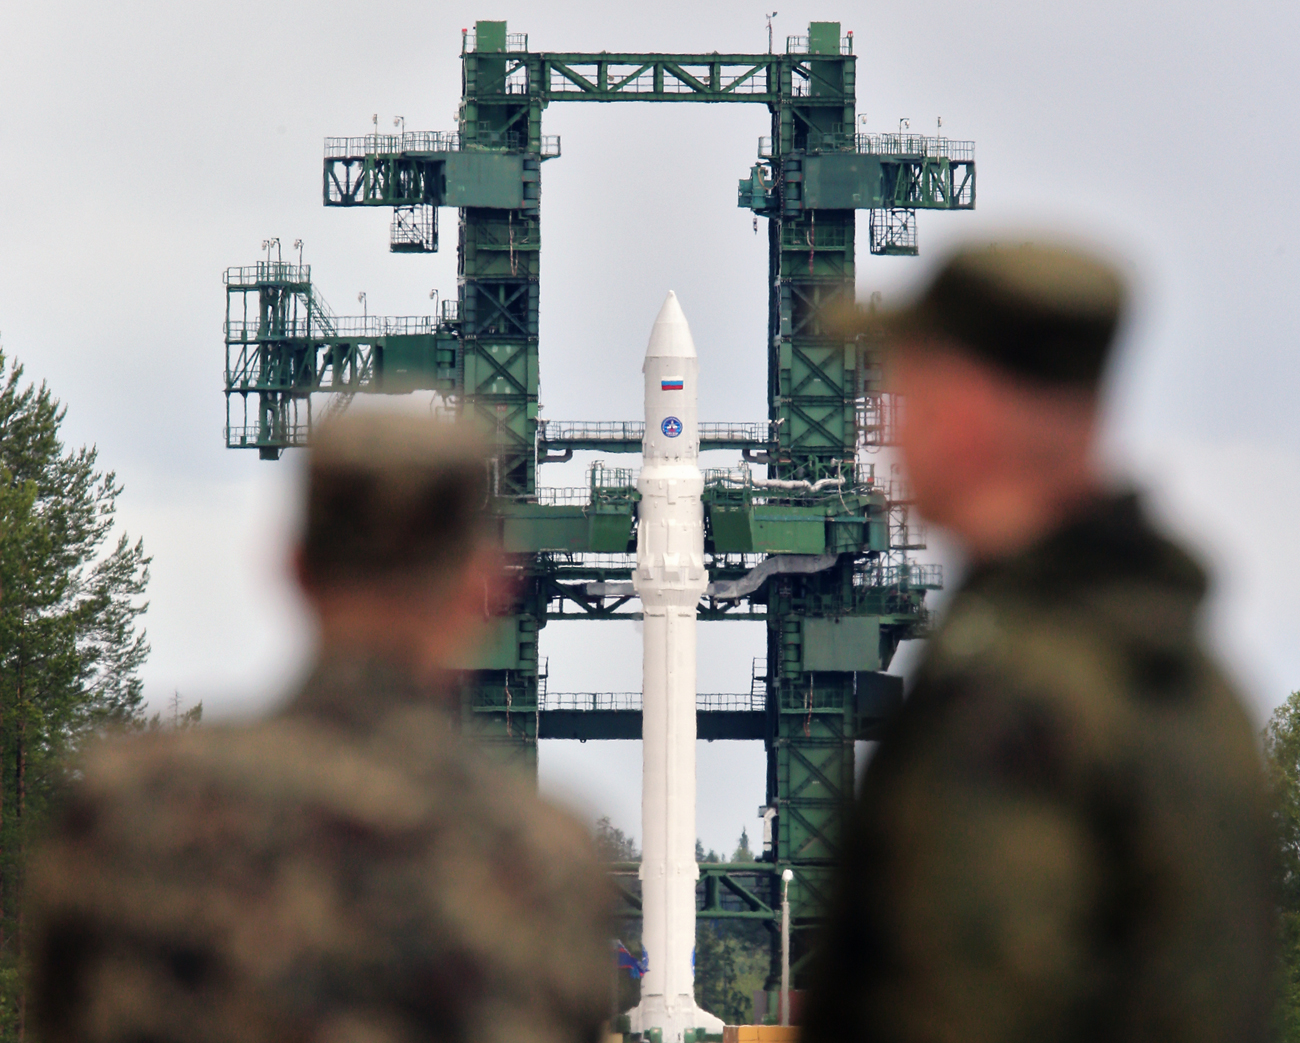 Roket ruang angkasa Angara-1.2PP saat pengisian bahan bakar di Plesetsk.